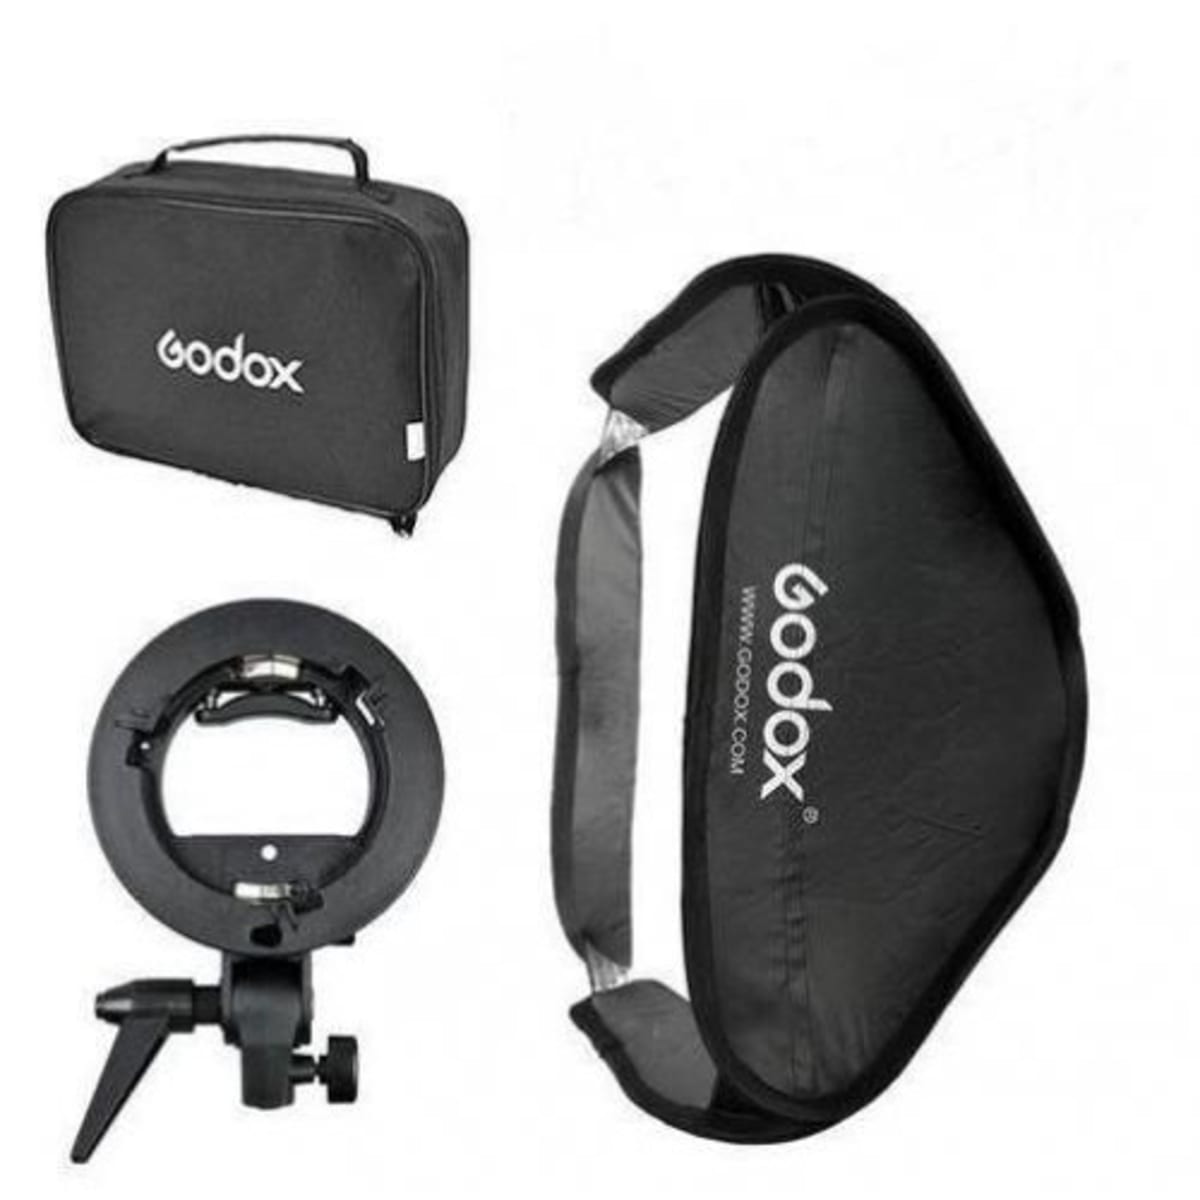 Godox Easy Speedlight Soft Box - 60cm